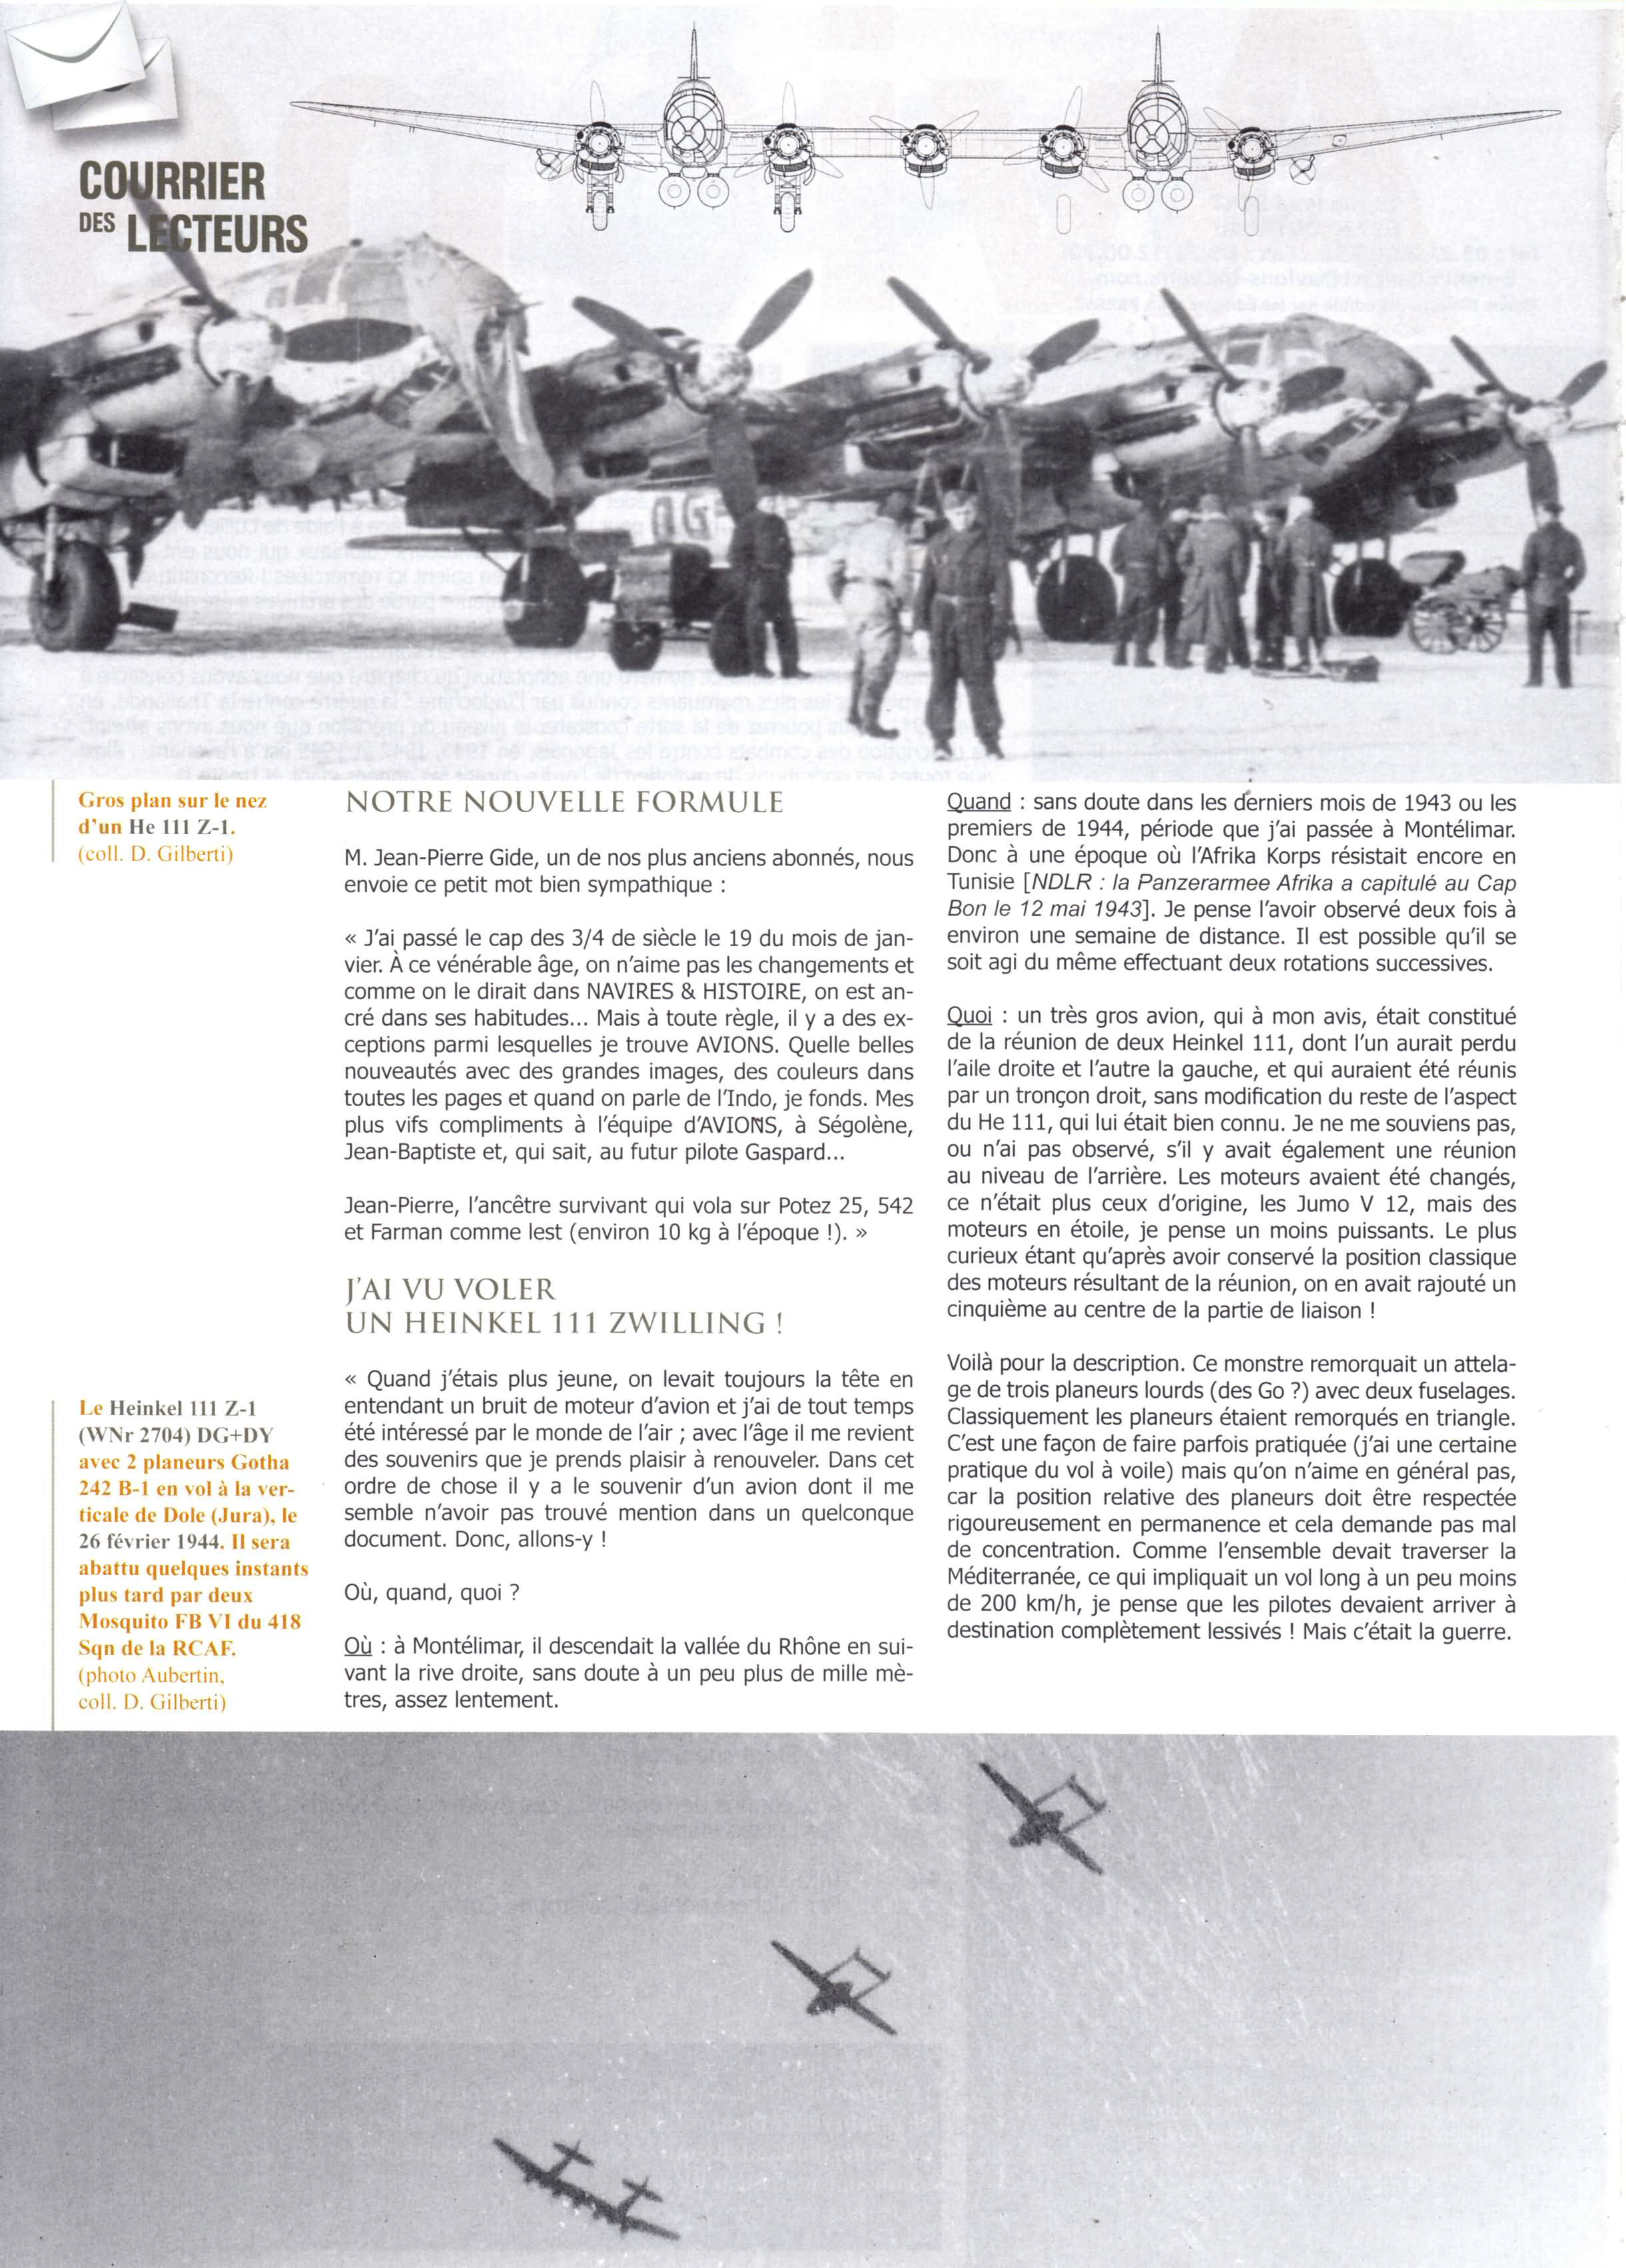 Heinkel He 115Z1 DG+DY WNr 2704 towing Gotha 242 B1 26th Feb 1944 Avions 187